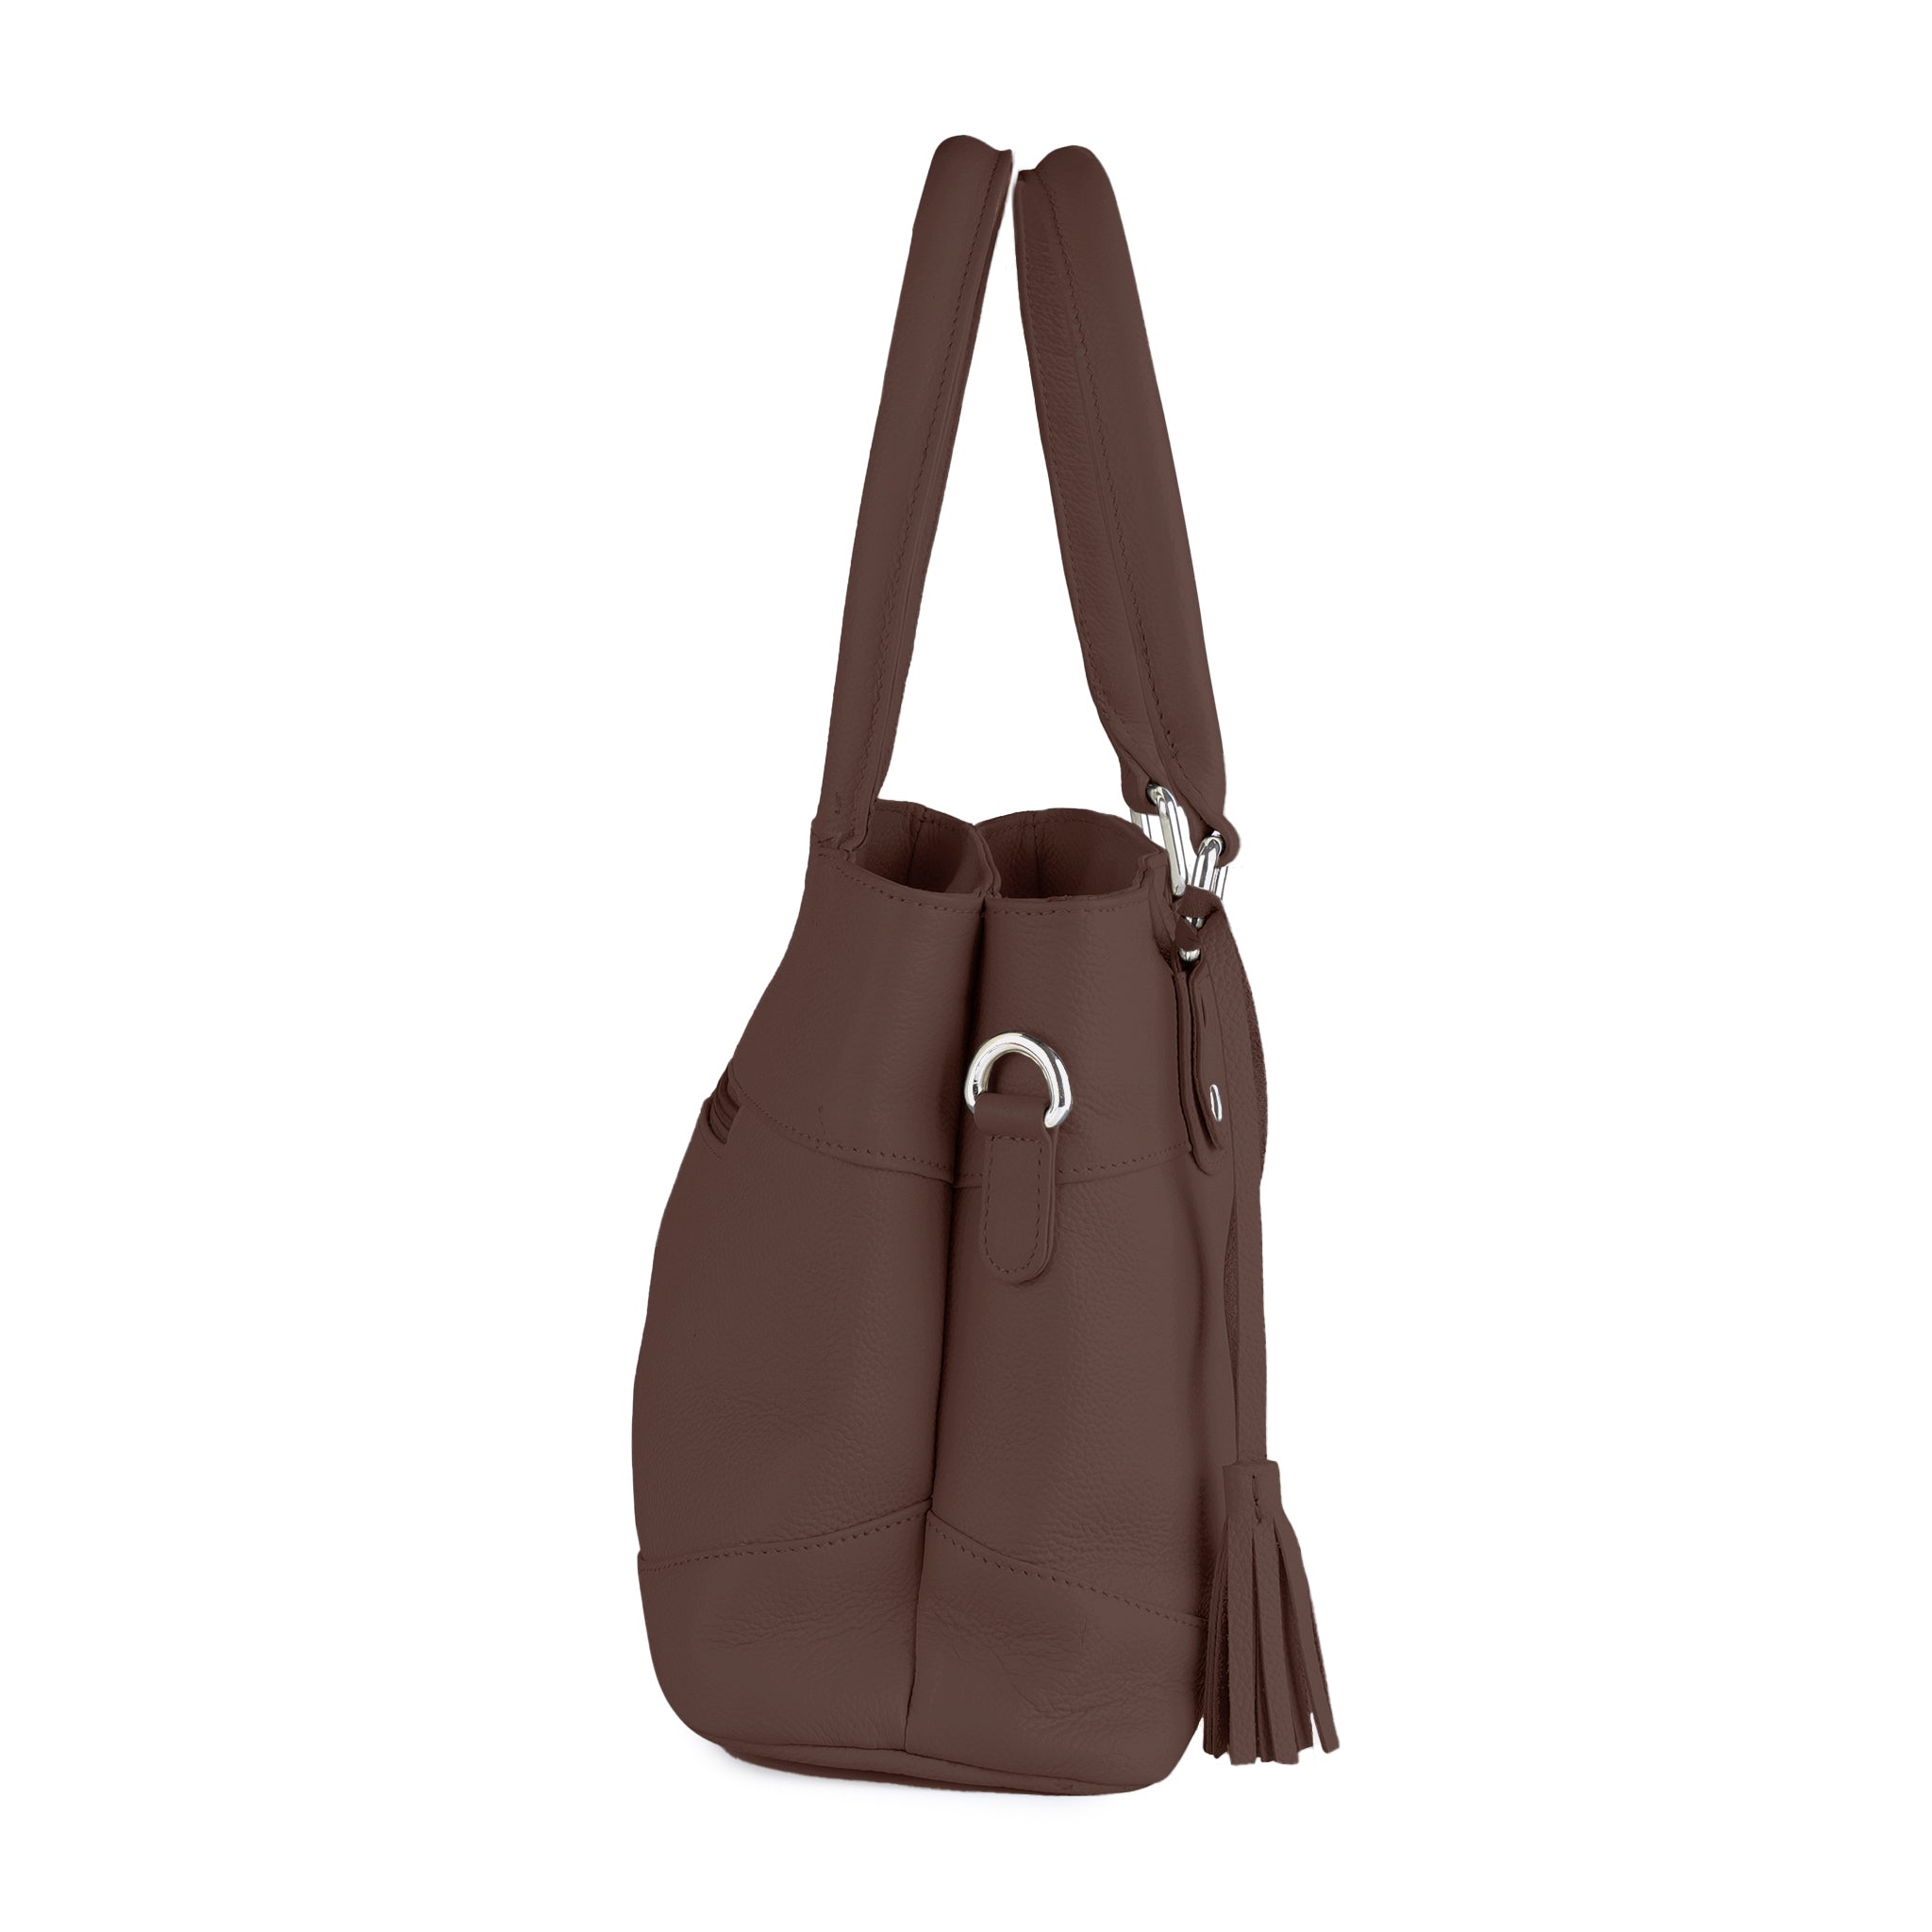 Red Soft Genuine Leather Tote Bag Simply Large Shoulder Shopper Bag |  Baginning